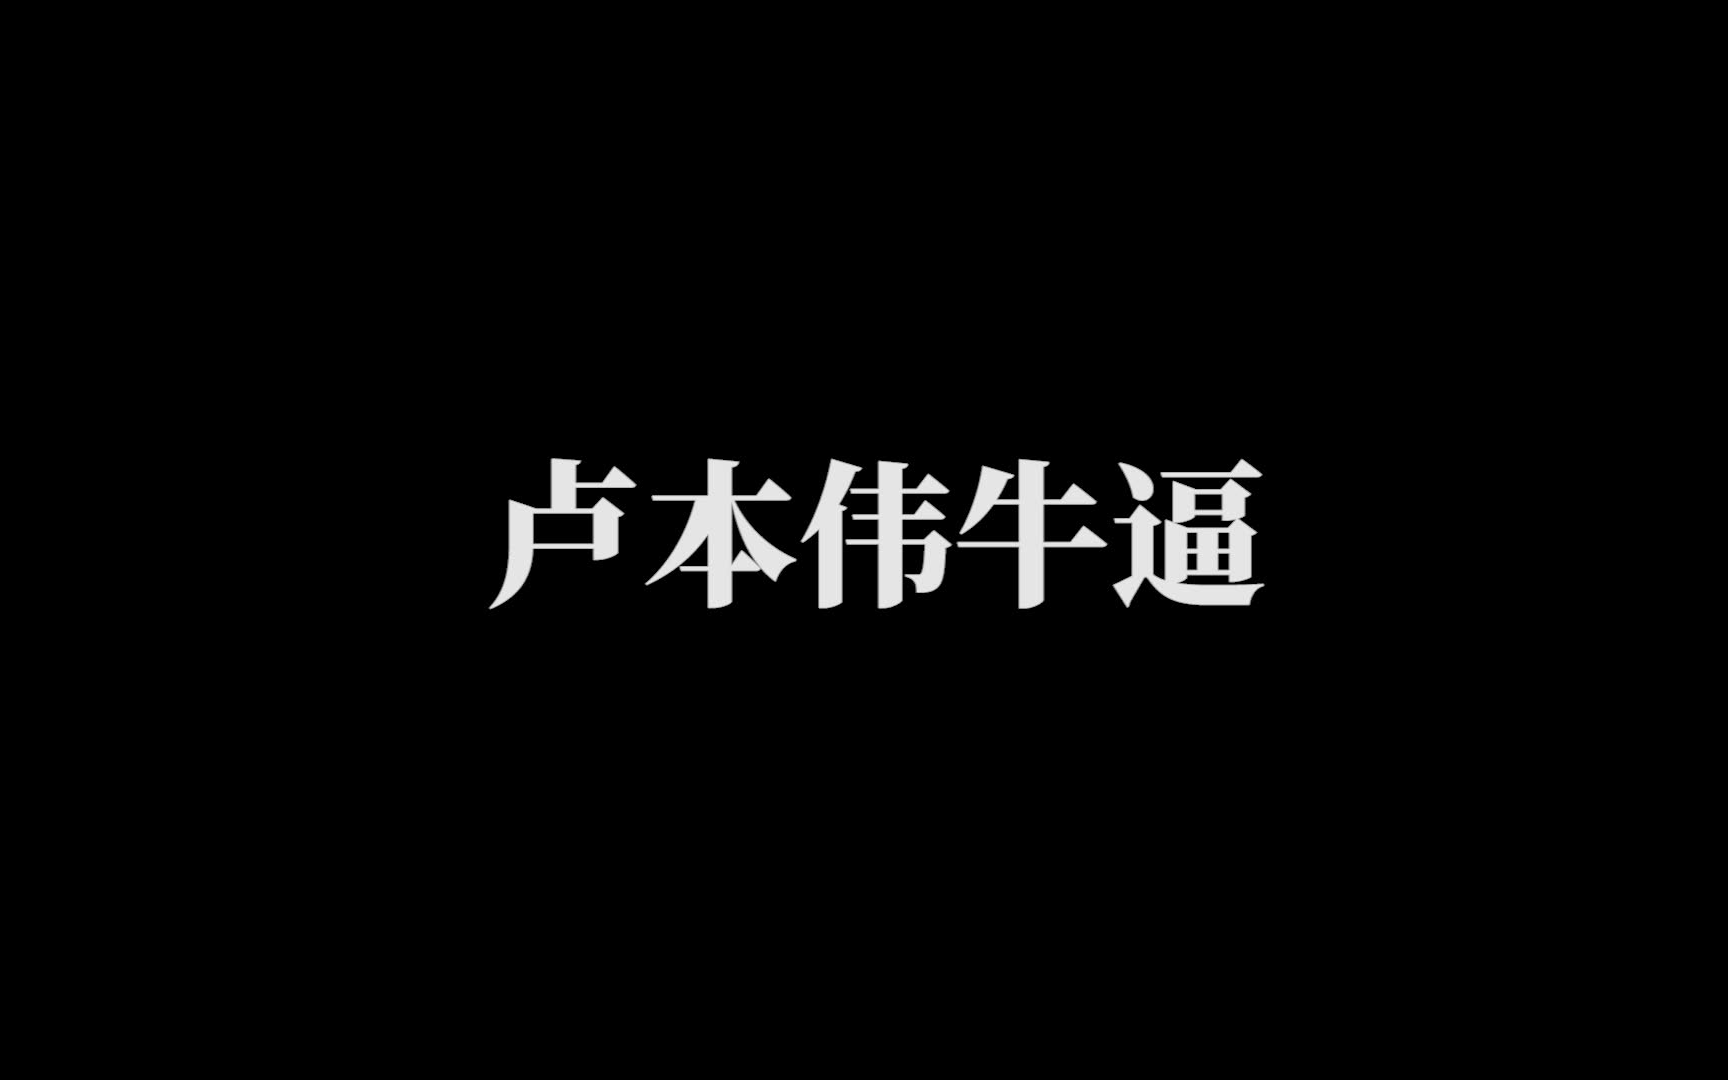 【鬼畜素材分享】主播系列【孙笑川语音包2.0】